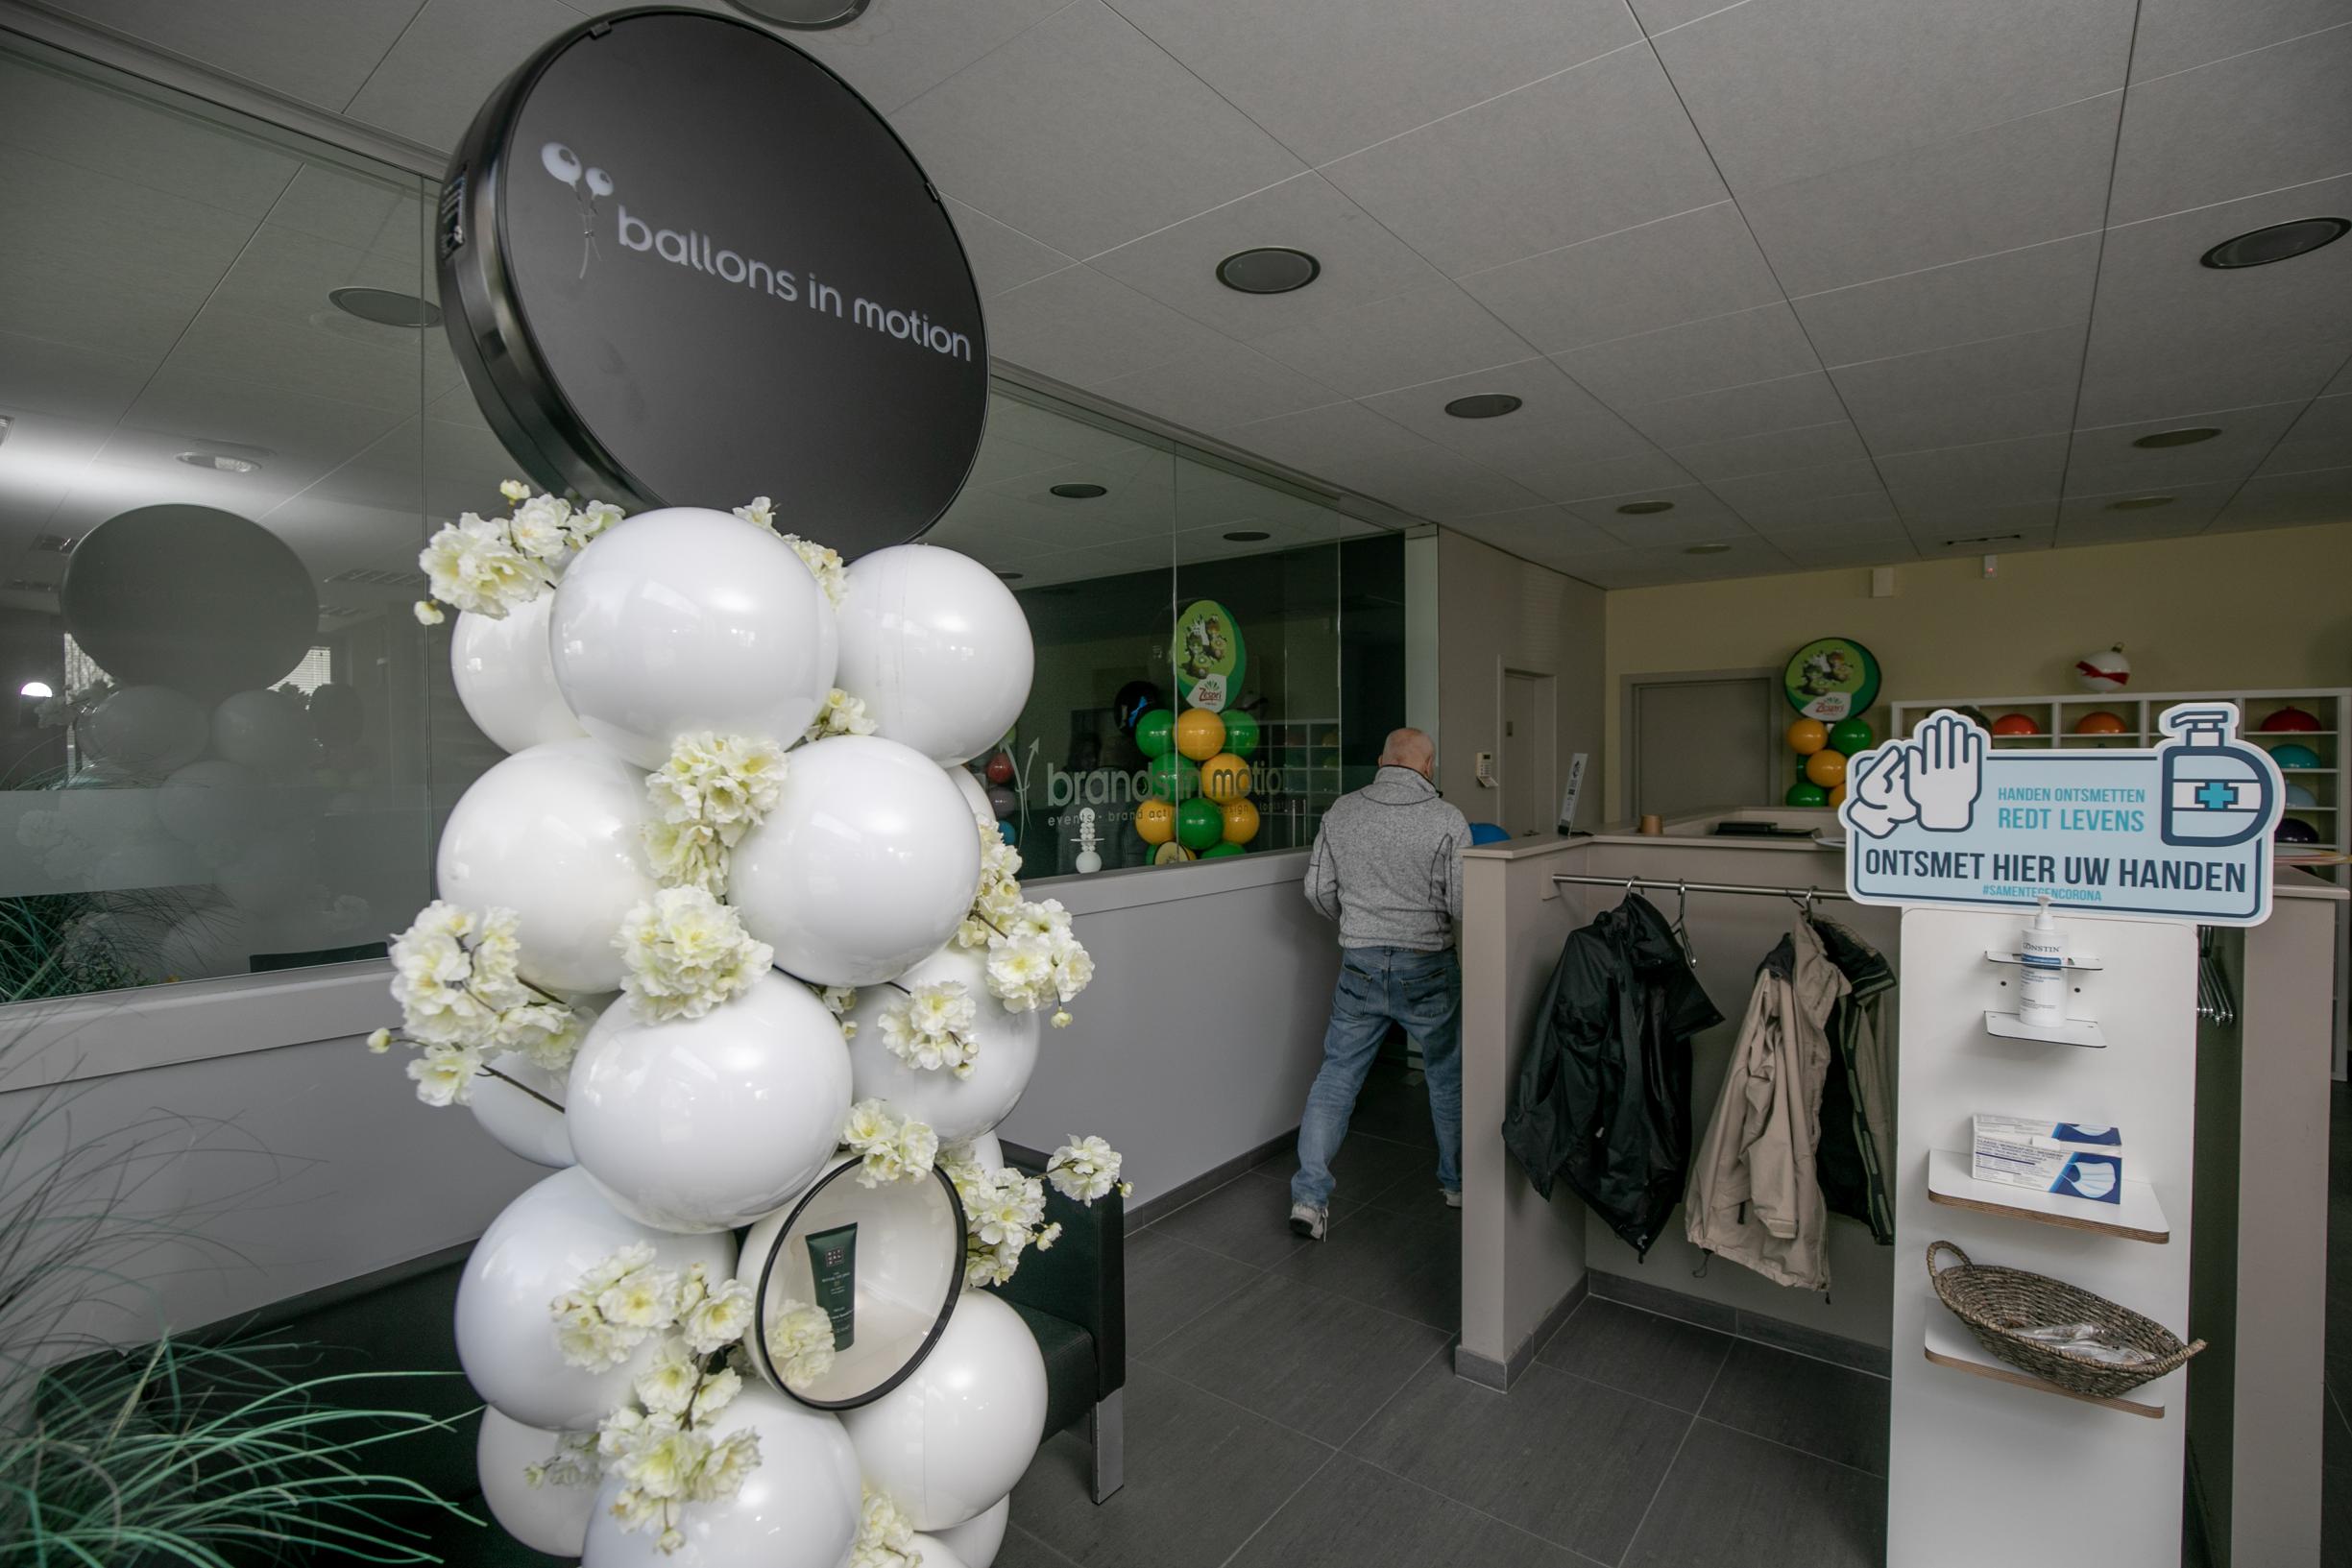 totaal Mark titel Kessels bedrijf pakt uit met duurzame ballonnen van hard plastic: “De  toepassingen zijn eindeloos” (Nijlen) | Het Nieuwsblad Mobile